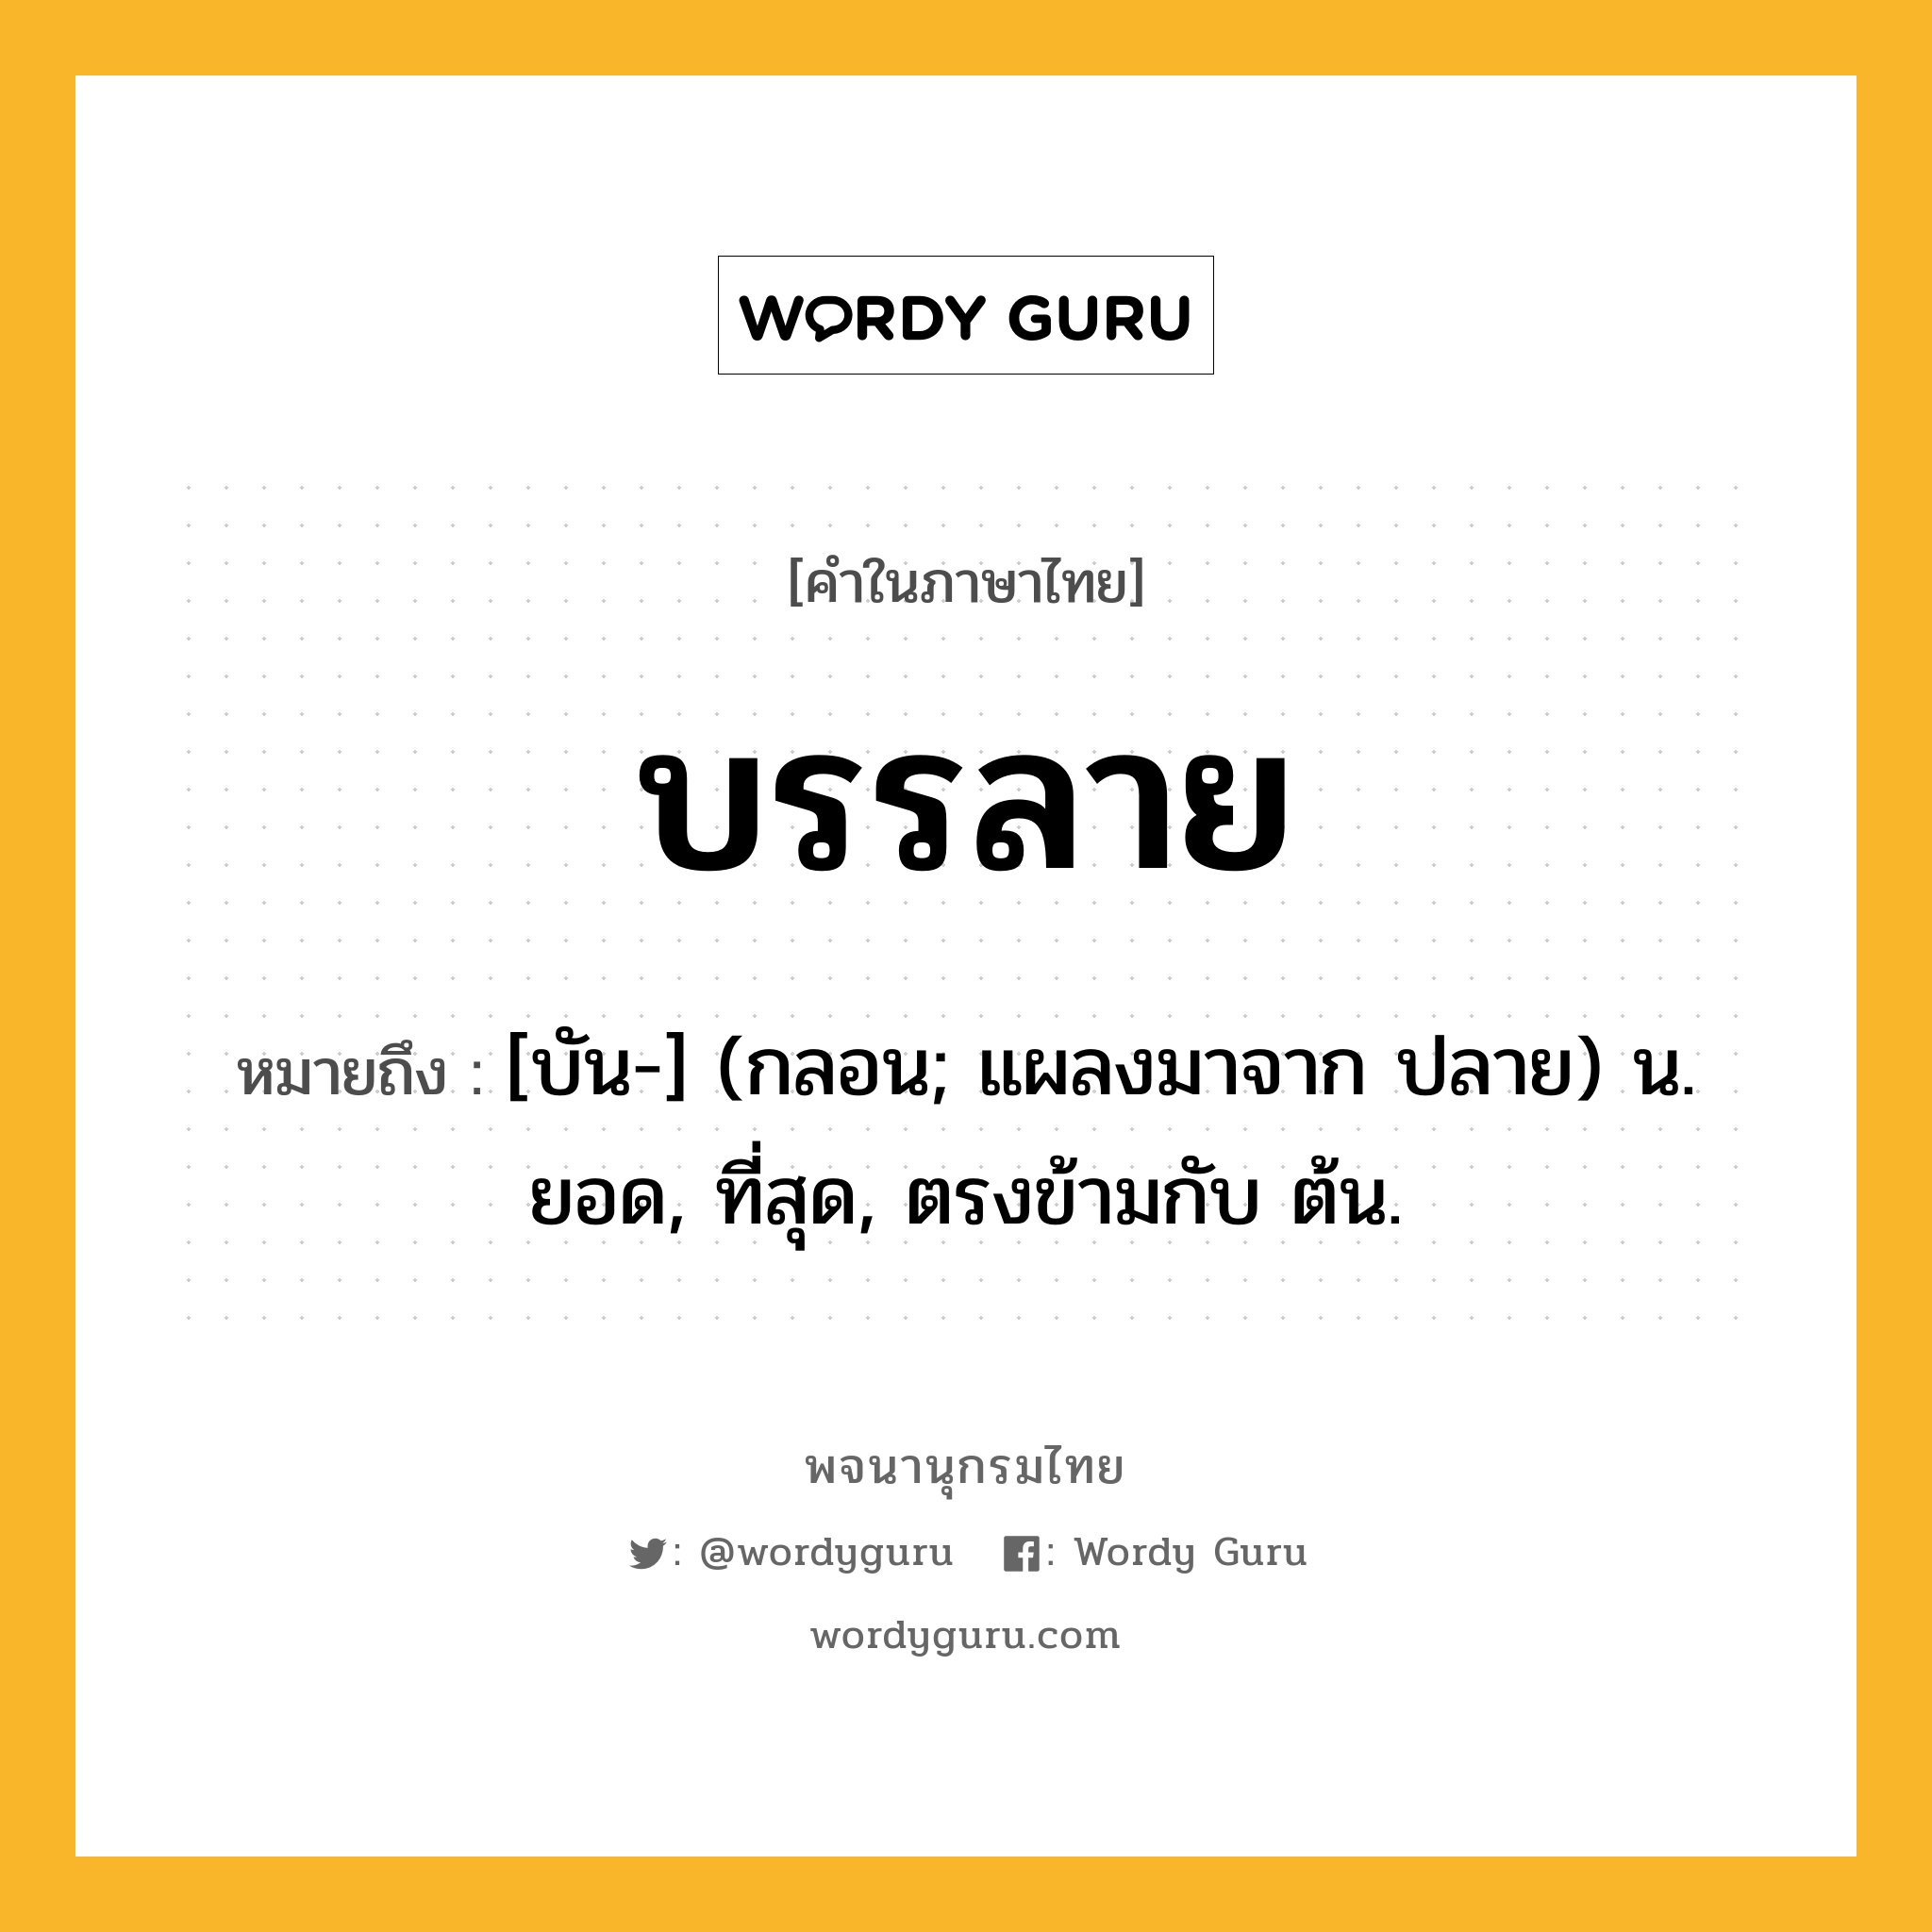 บรรลาย ความหมาย หมายถึงอะไร?, คำในภาษาไทย บรรลาย หมายถึง [บัน-] (กลอน; แผลงมาจาก ปลาย) น. ยอด, ที่สุด, ตรงข้ามกับ ต้น.